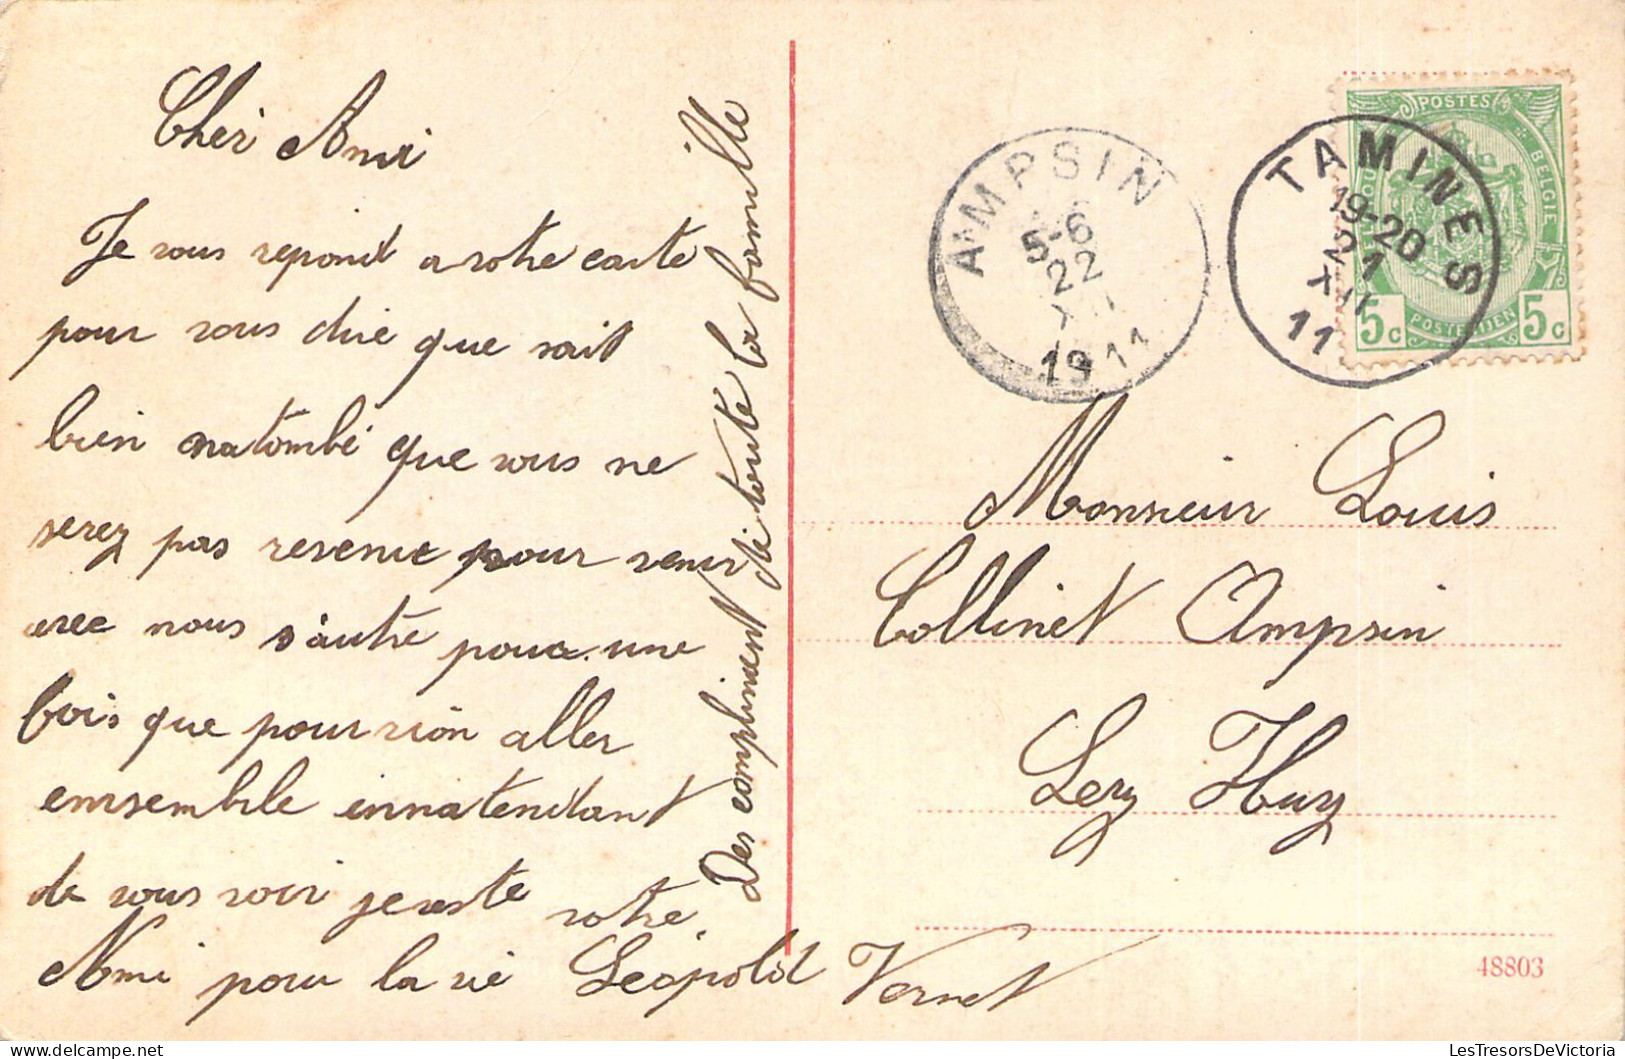 MILITARIA - Uniforme - Infanterie - Carte Postale Ancienne - Uniforms